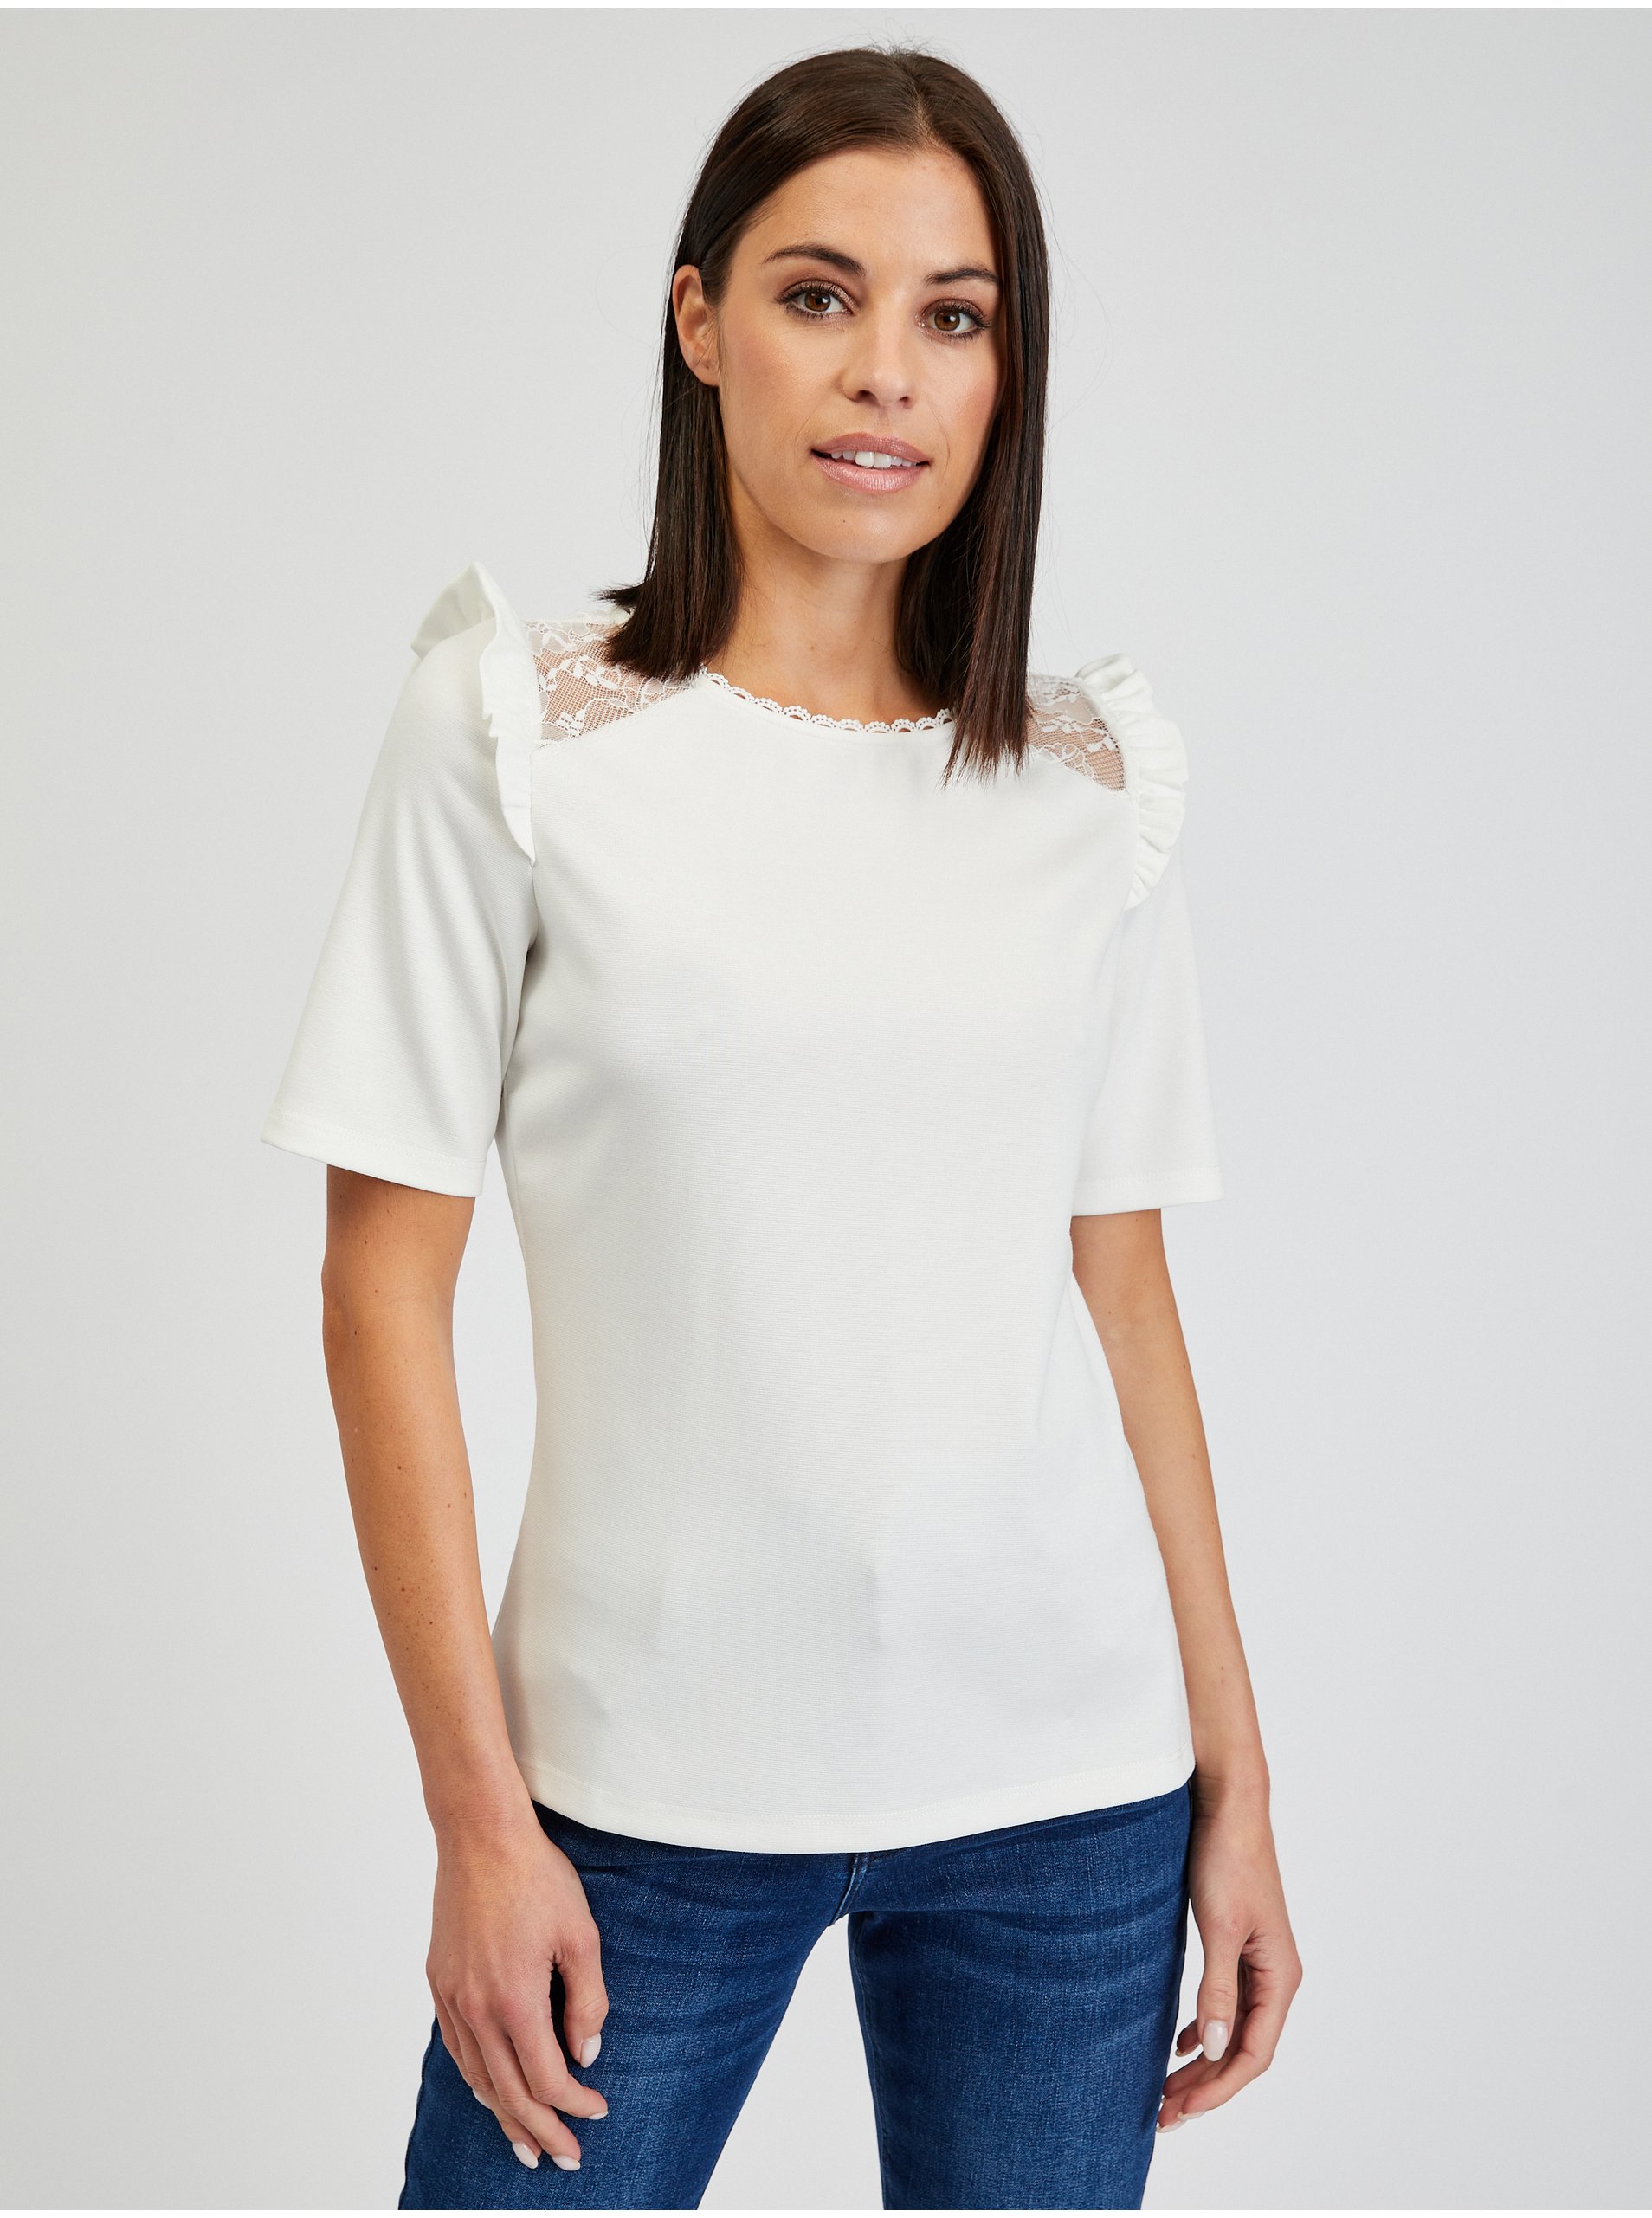 E-shop Bílé dámské tričko s průstřihem na zádech ORSAY